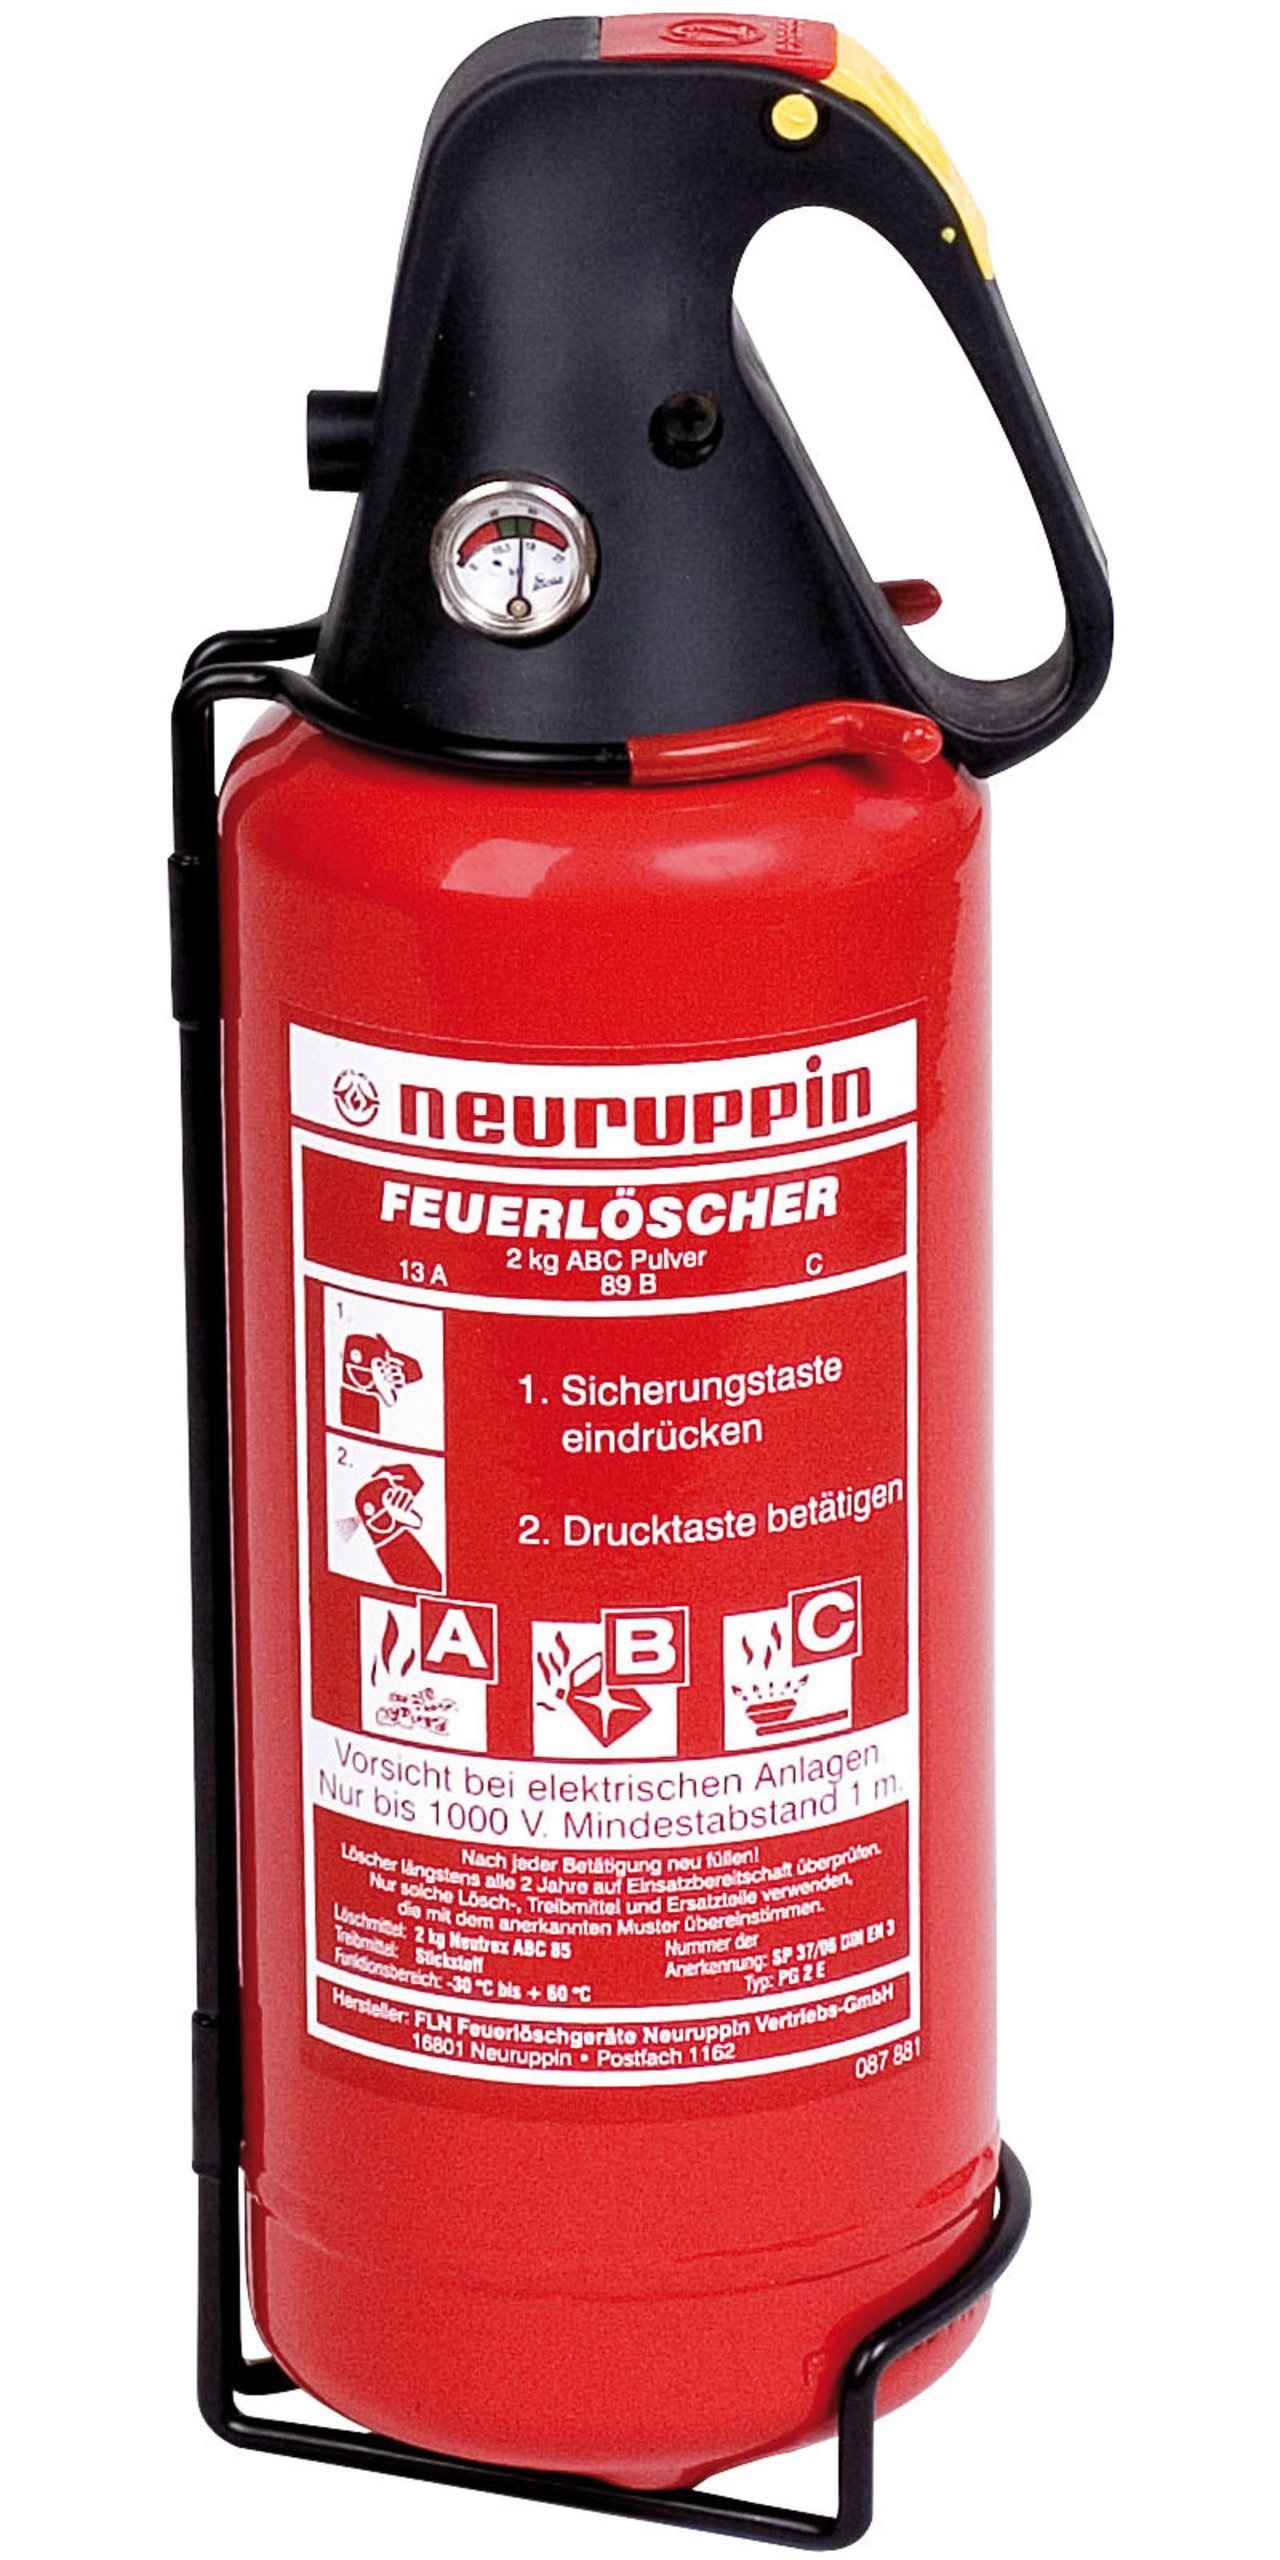 2KG ABC-Pulver-Feuerlöscher